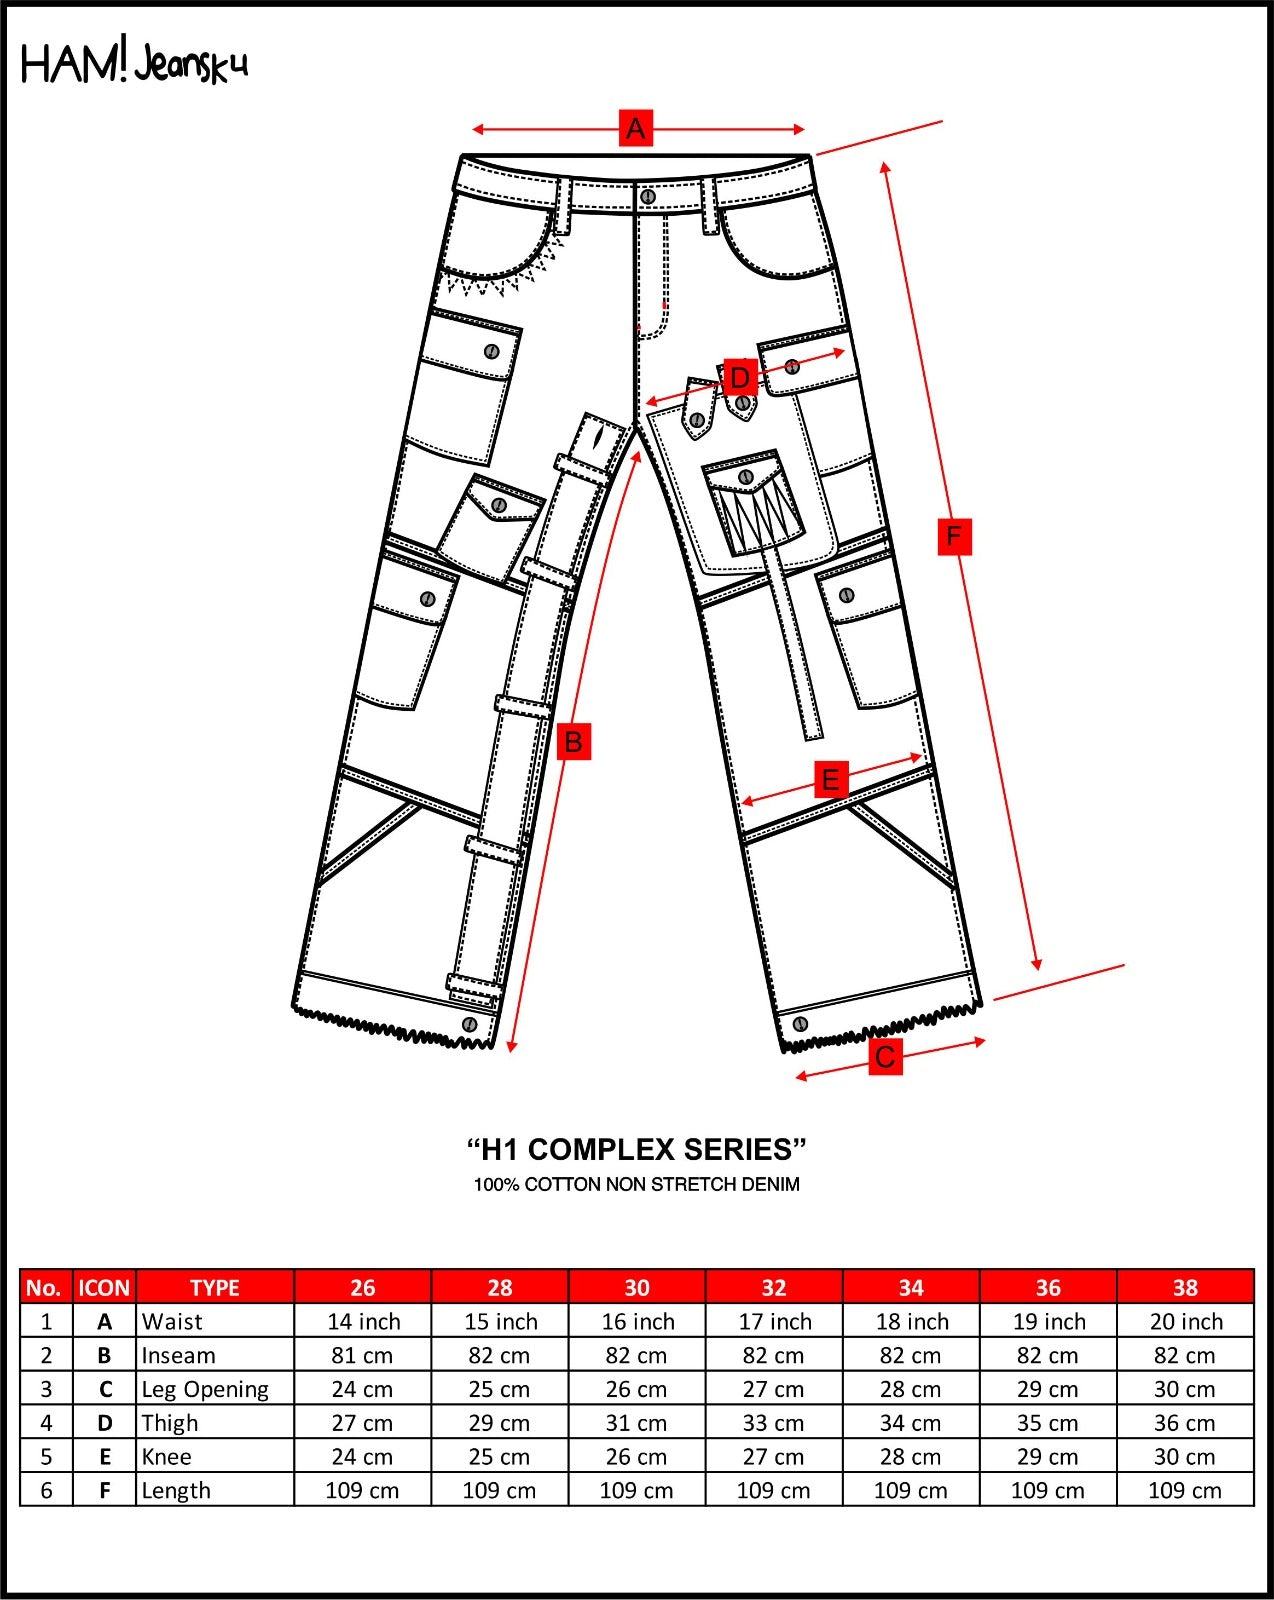 H1 cargo complex - White dove - Celana Jeans